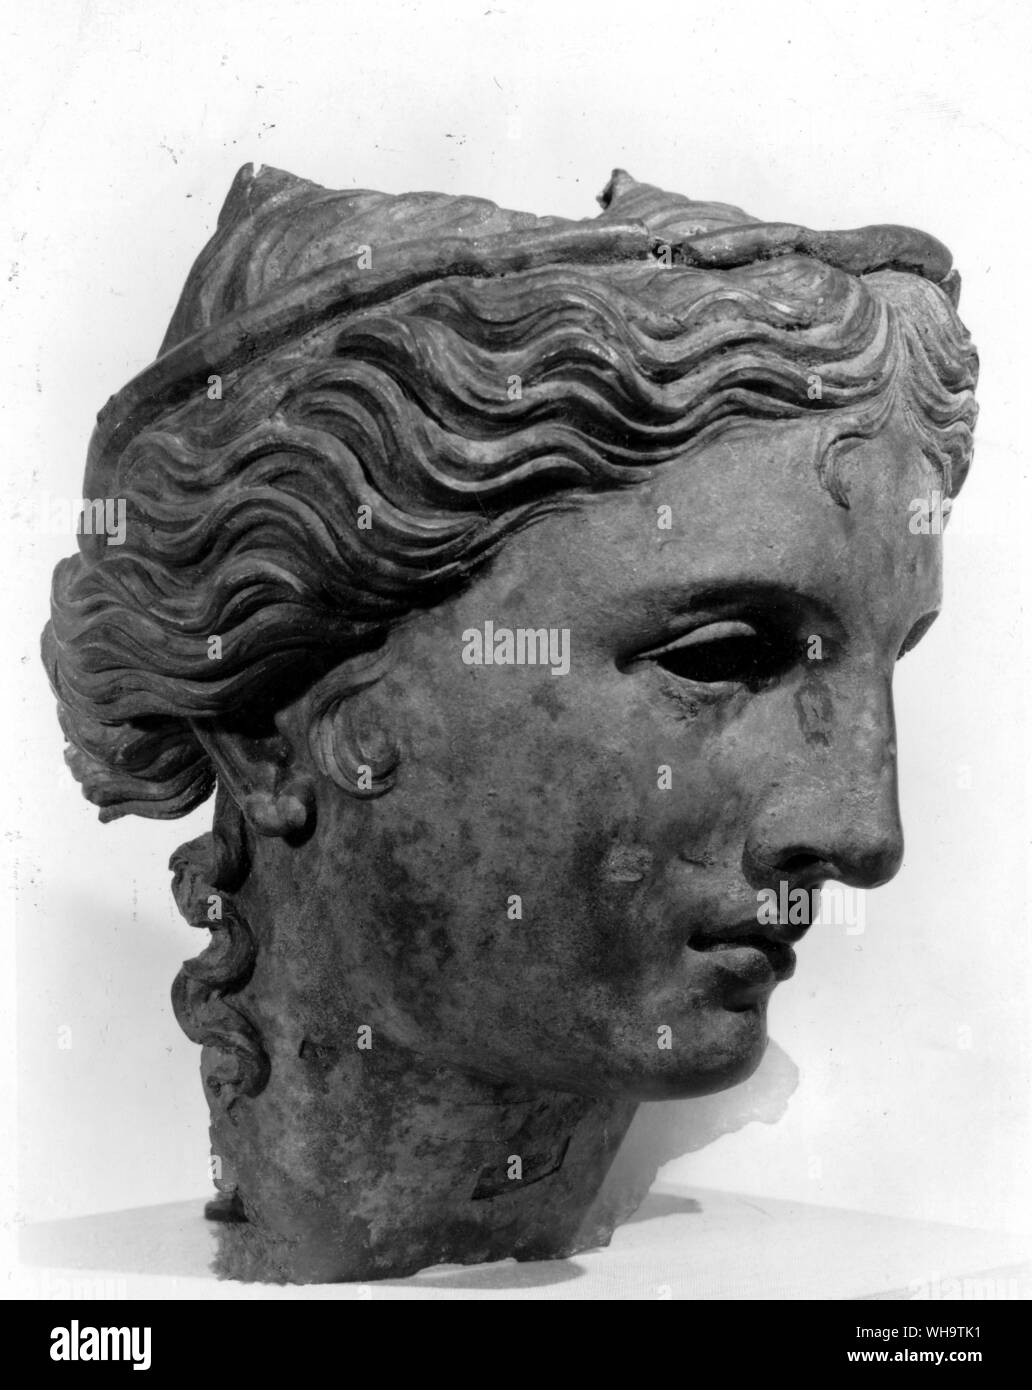 Il tardo classico ideale di bellezza, sulla base di un quarto di secolo originale, questa testa di Afrodite mostra come gli dèi sono diventati indistinguibili da esseri umani idealizzato. Foto Stock